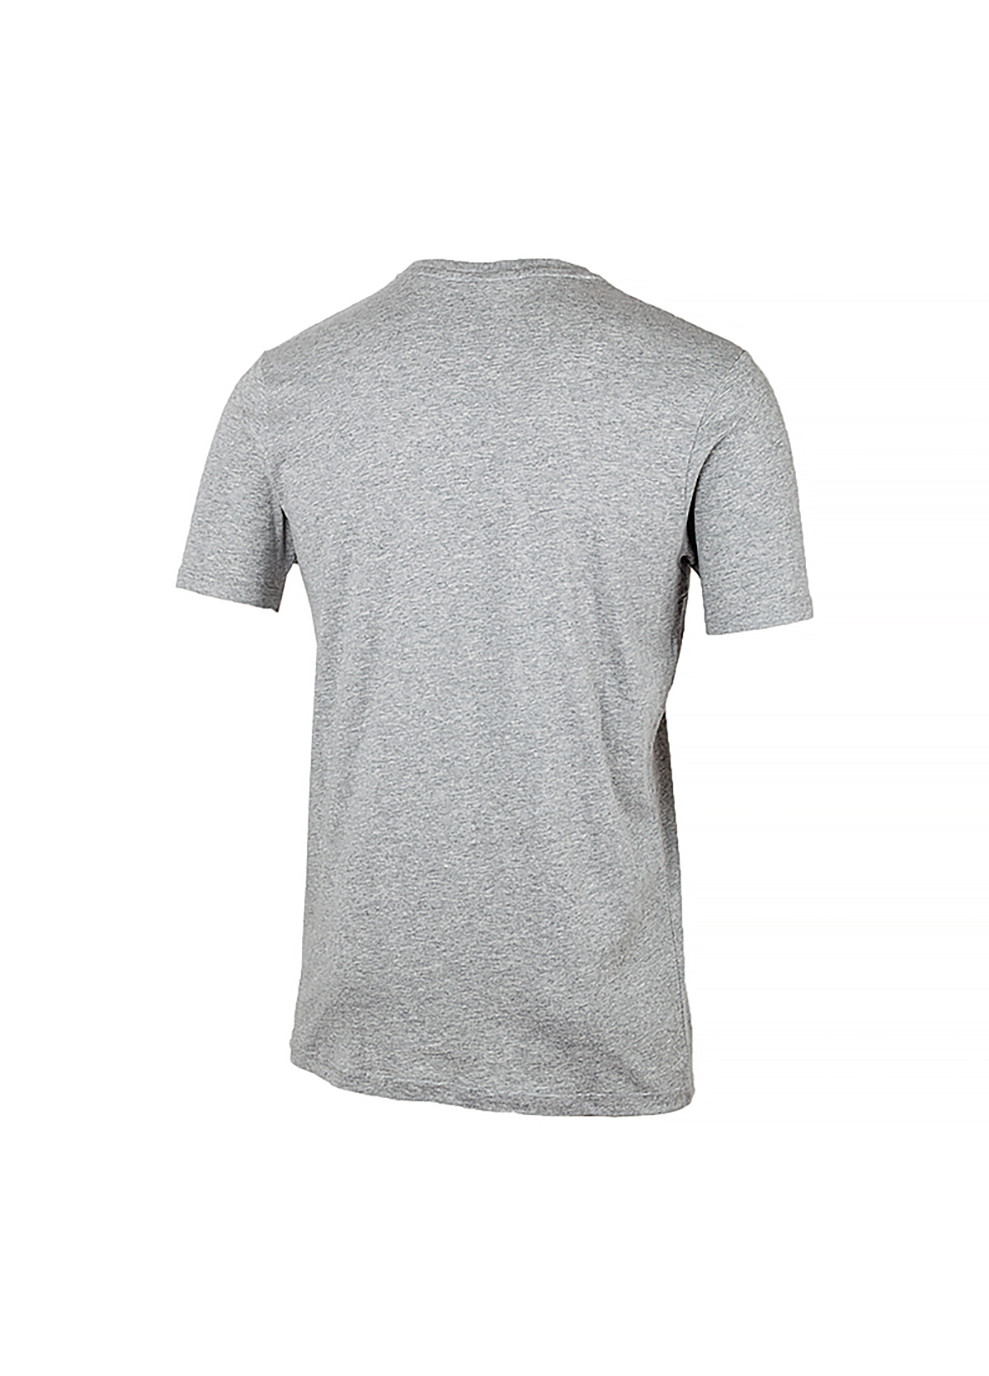 Сіра чоловіча футболка sl prado сірий s (shc07405-grey-marl s) Ellesse